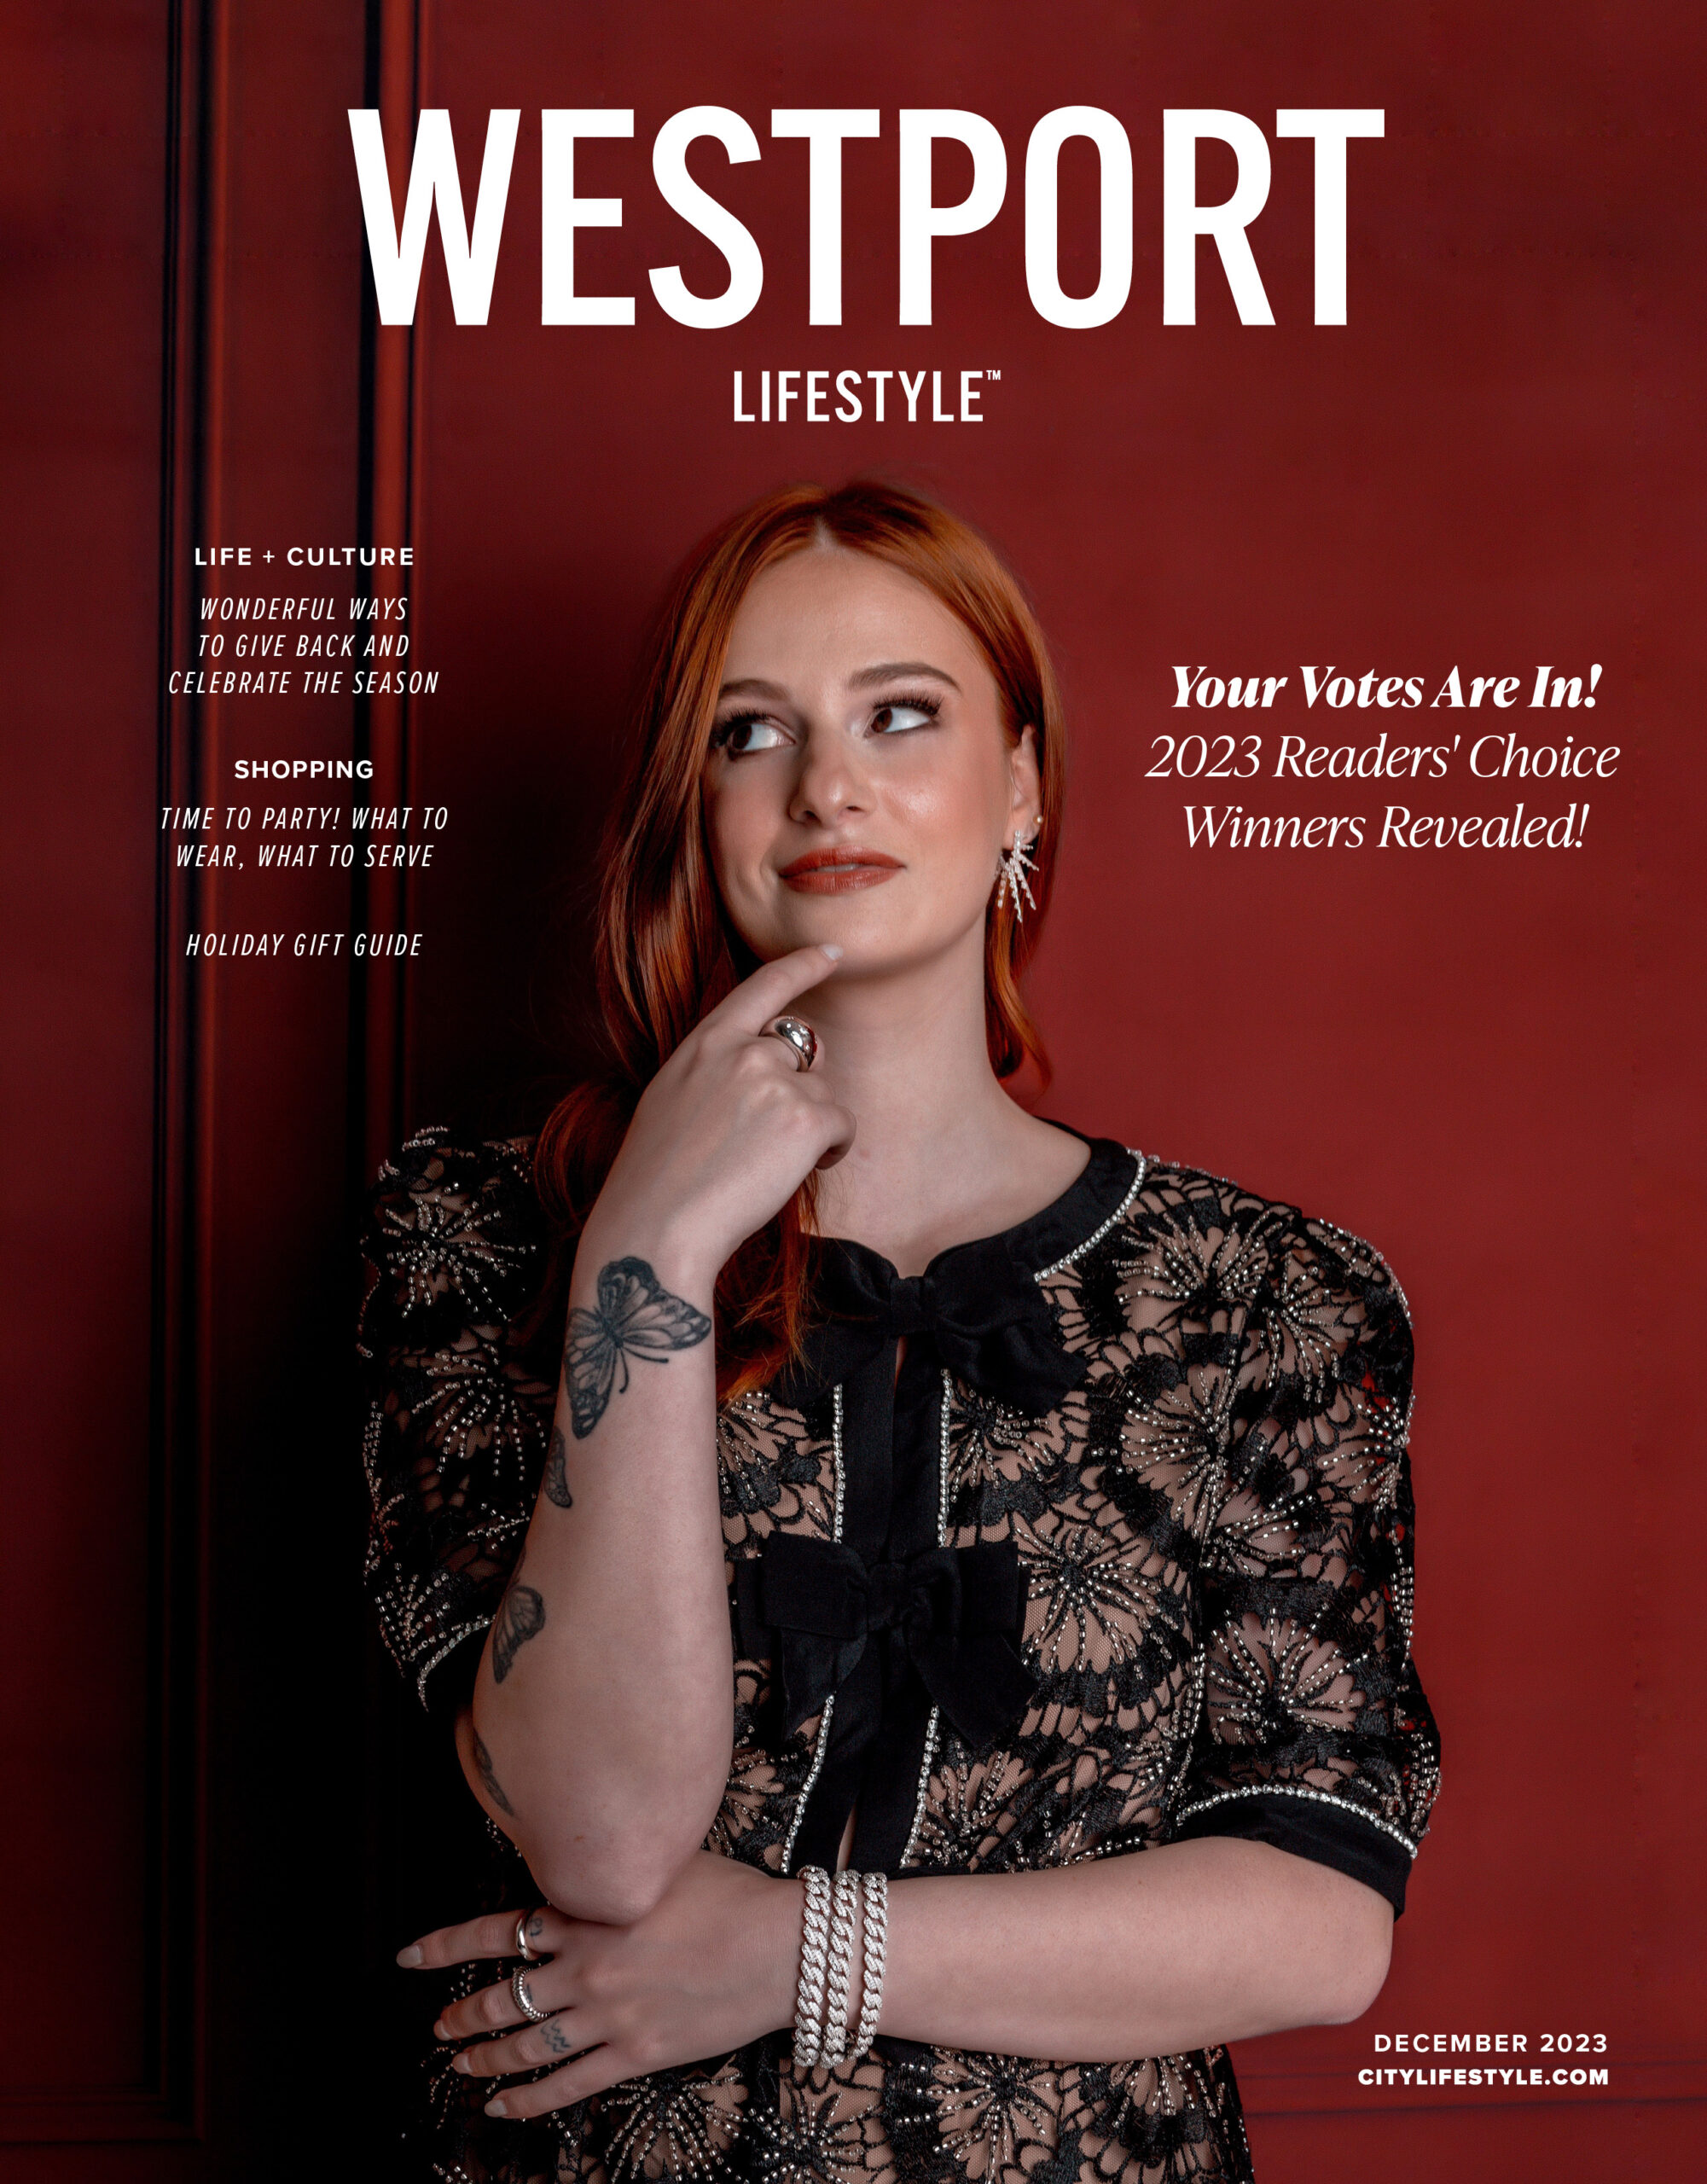 Westport Lifestyle Reader’s Choice 2023